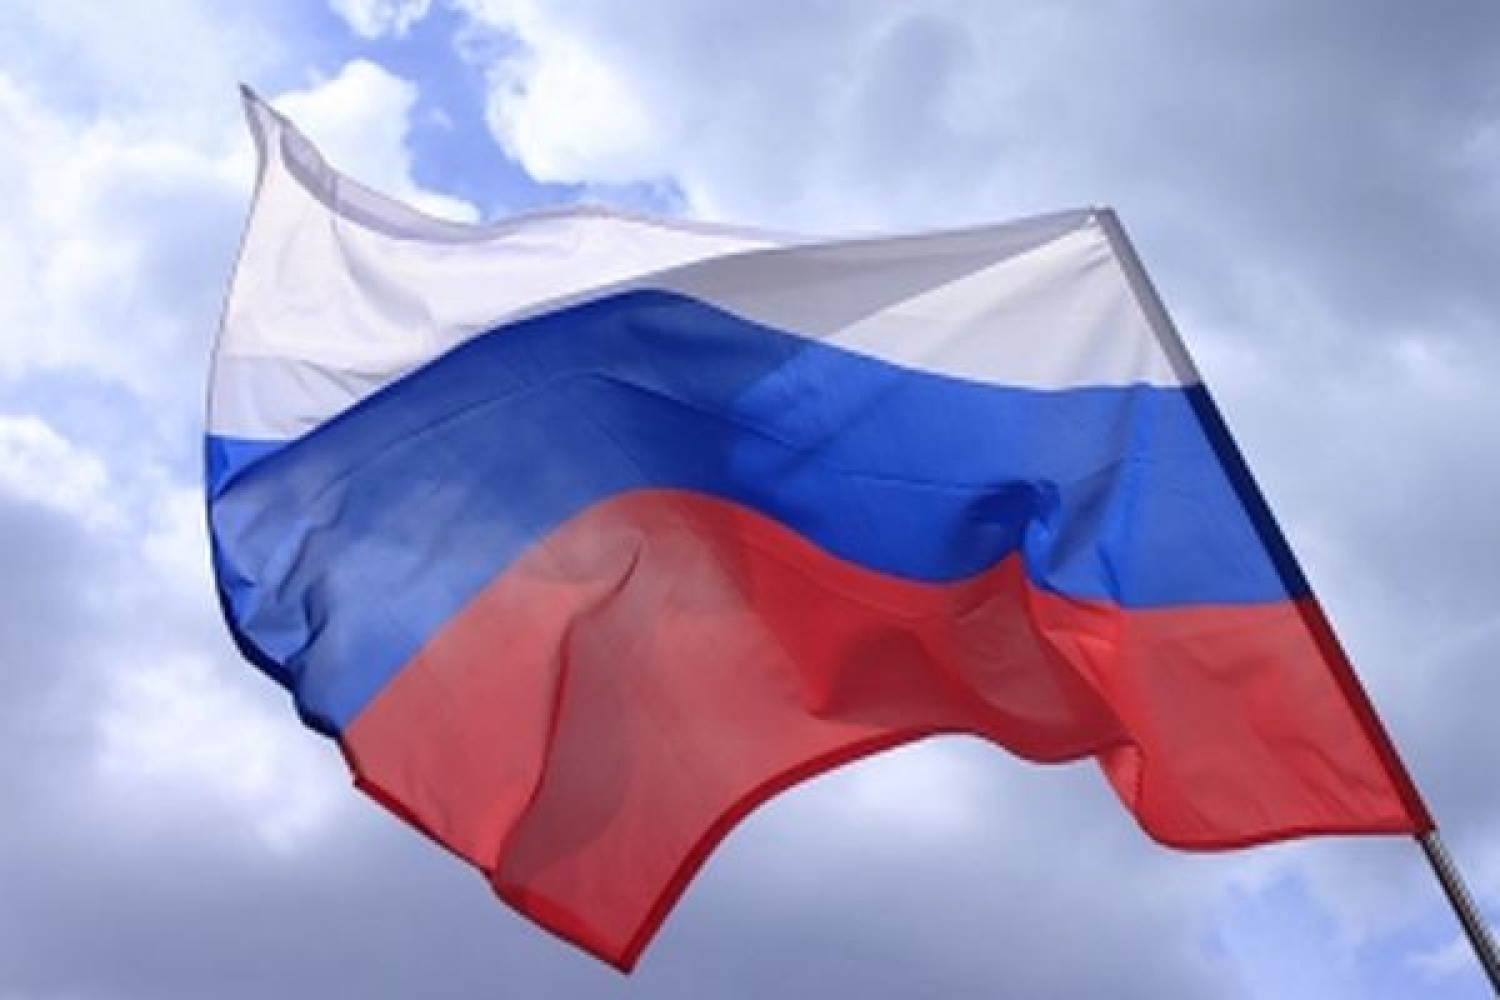 Рф це. Флаг России. Ф̆̈л̆̈ӑ̈г̆̈ р̆̈о̆̈с̆̈с̆̈й̈й̈. Триколор флаг.